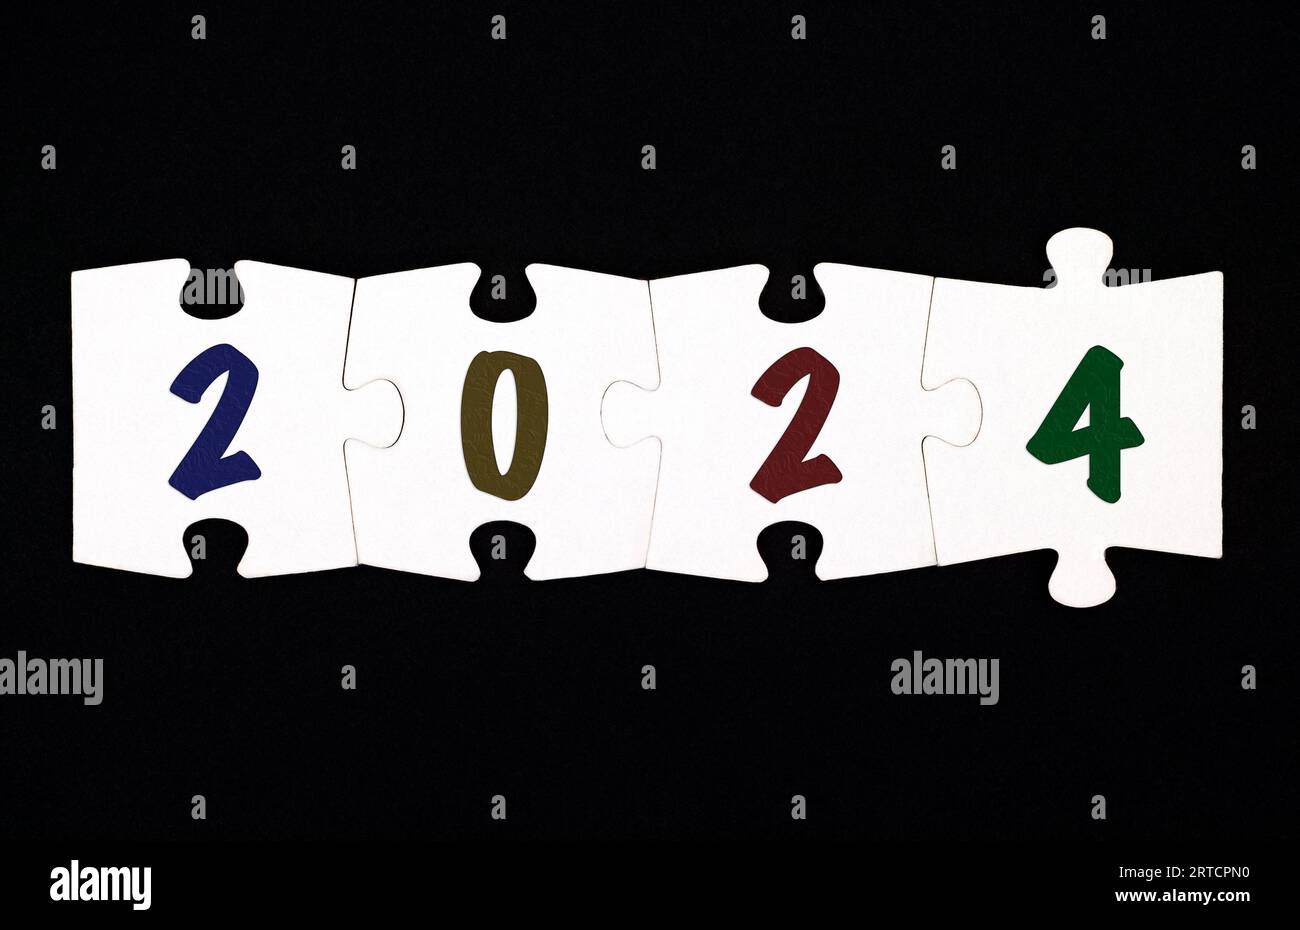 Quattro pezzi del puzzle con i numeri 2 0 2 4 sono collegati tra loro su uno sfondo nero Foto Stock